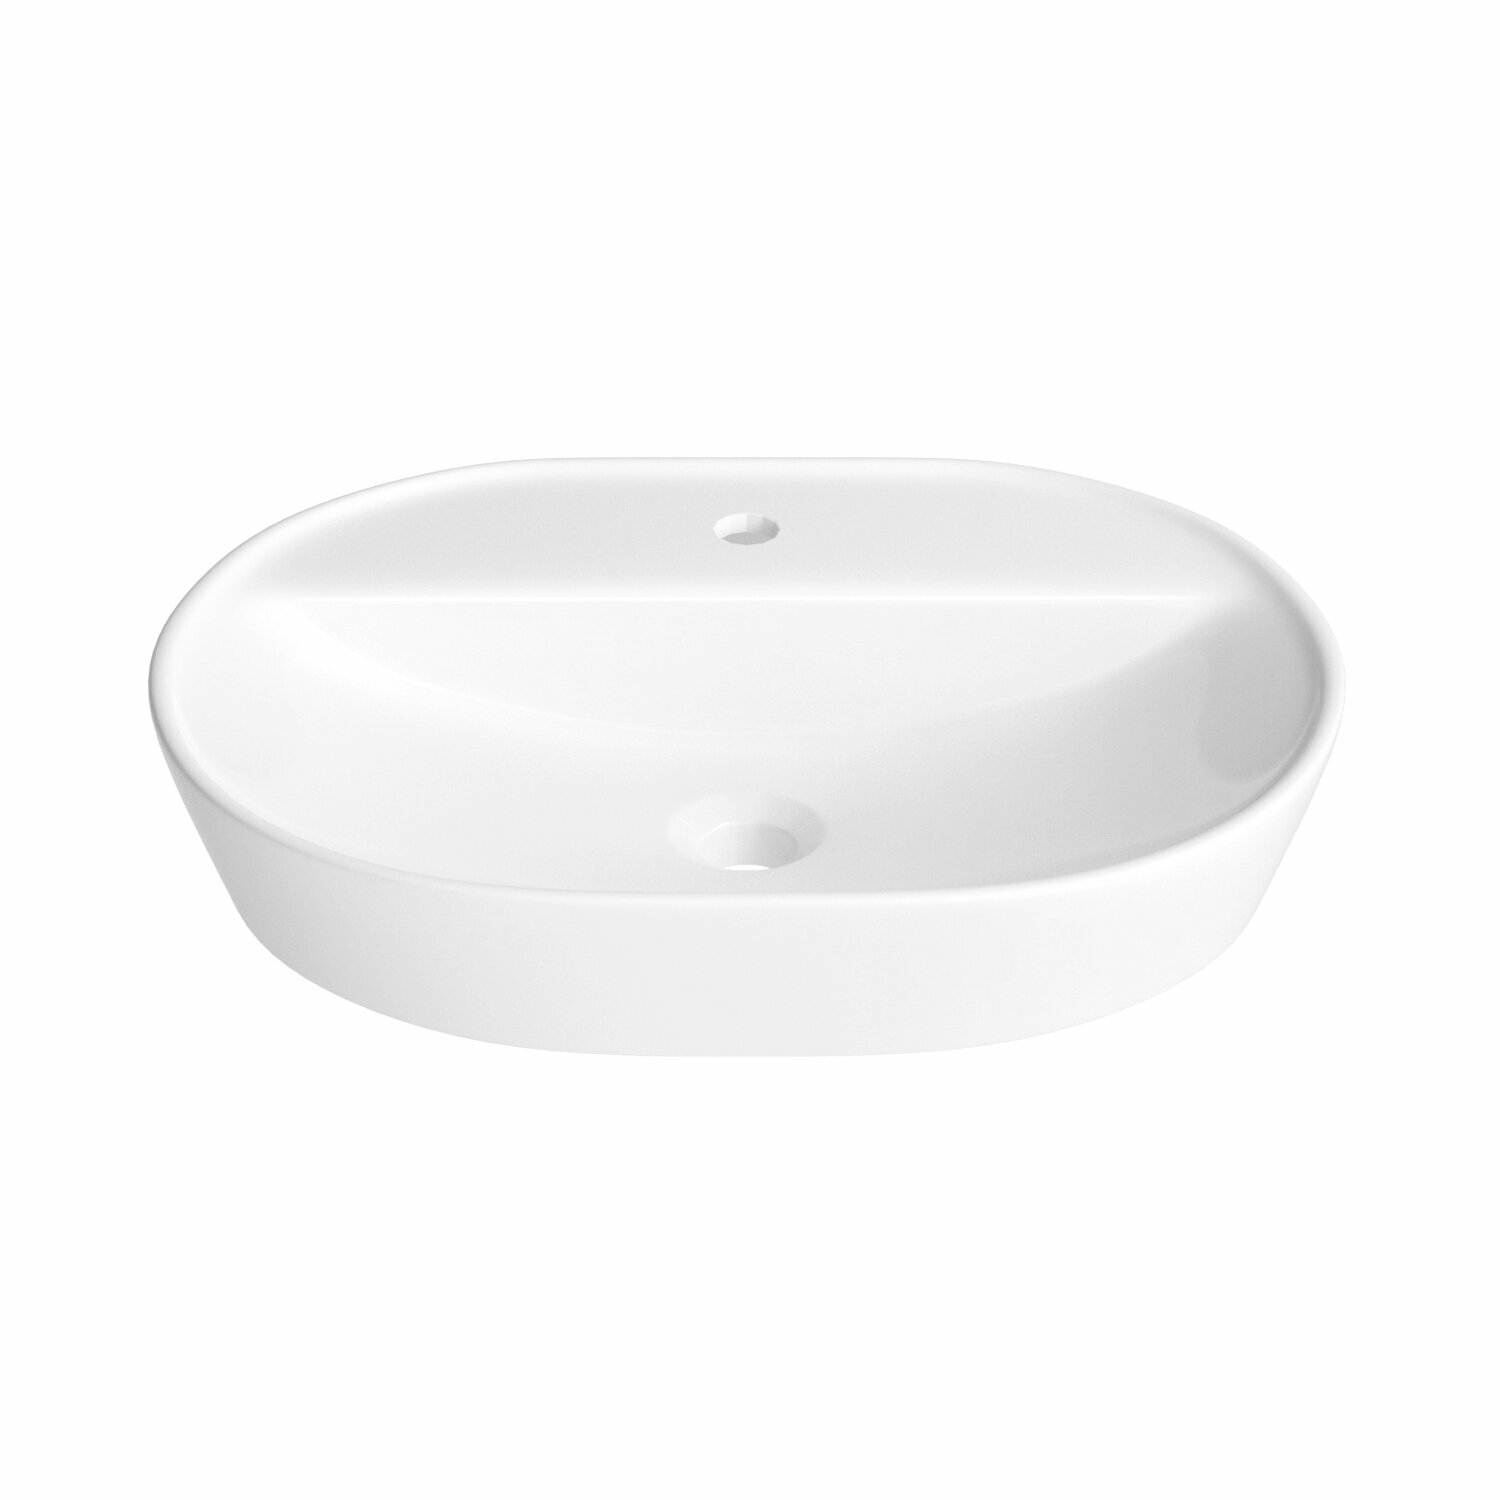 Накладная раковина для ванной комнаты Wellsee Calin 150201000, ширина умывальника 60 см, цвет глянцевый белый